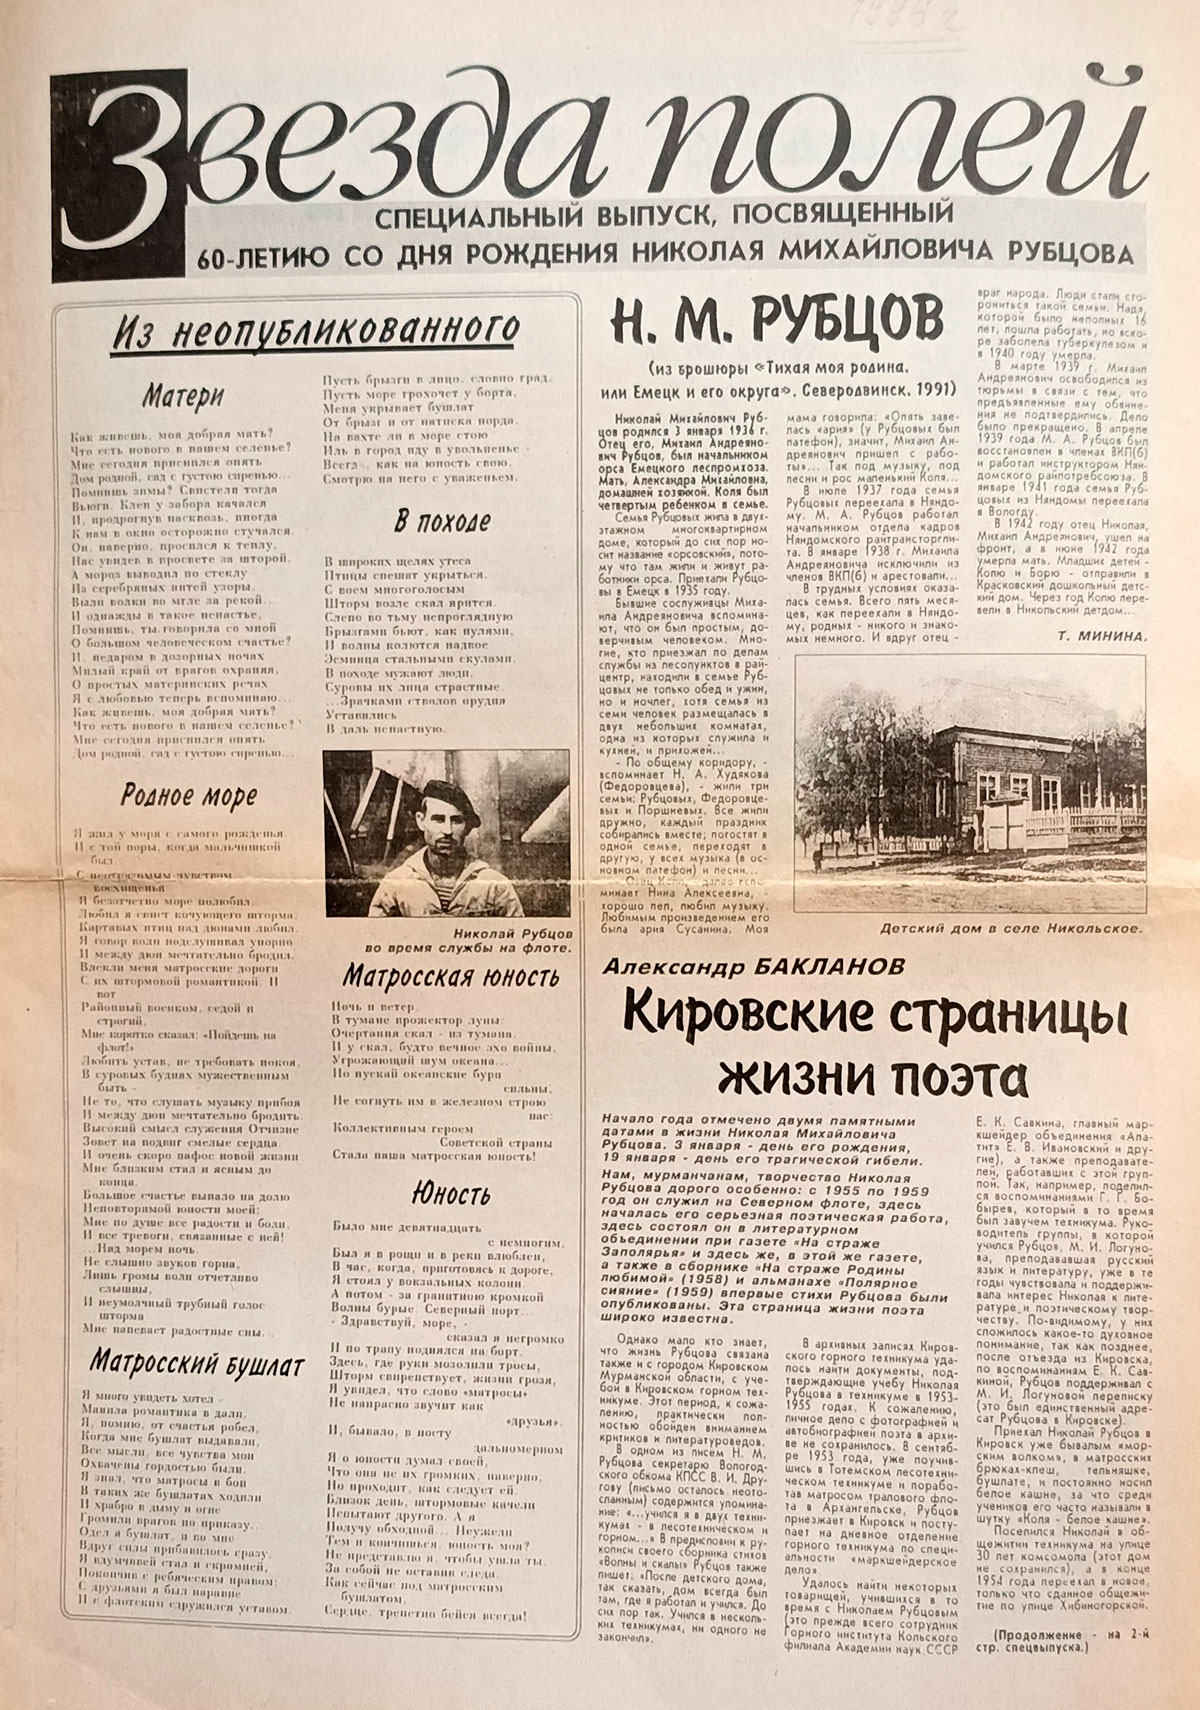 Специализированный выпуск к 60-летию со дня рождения Н.М. Рубцова